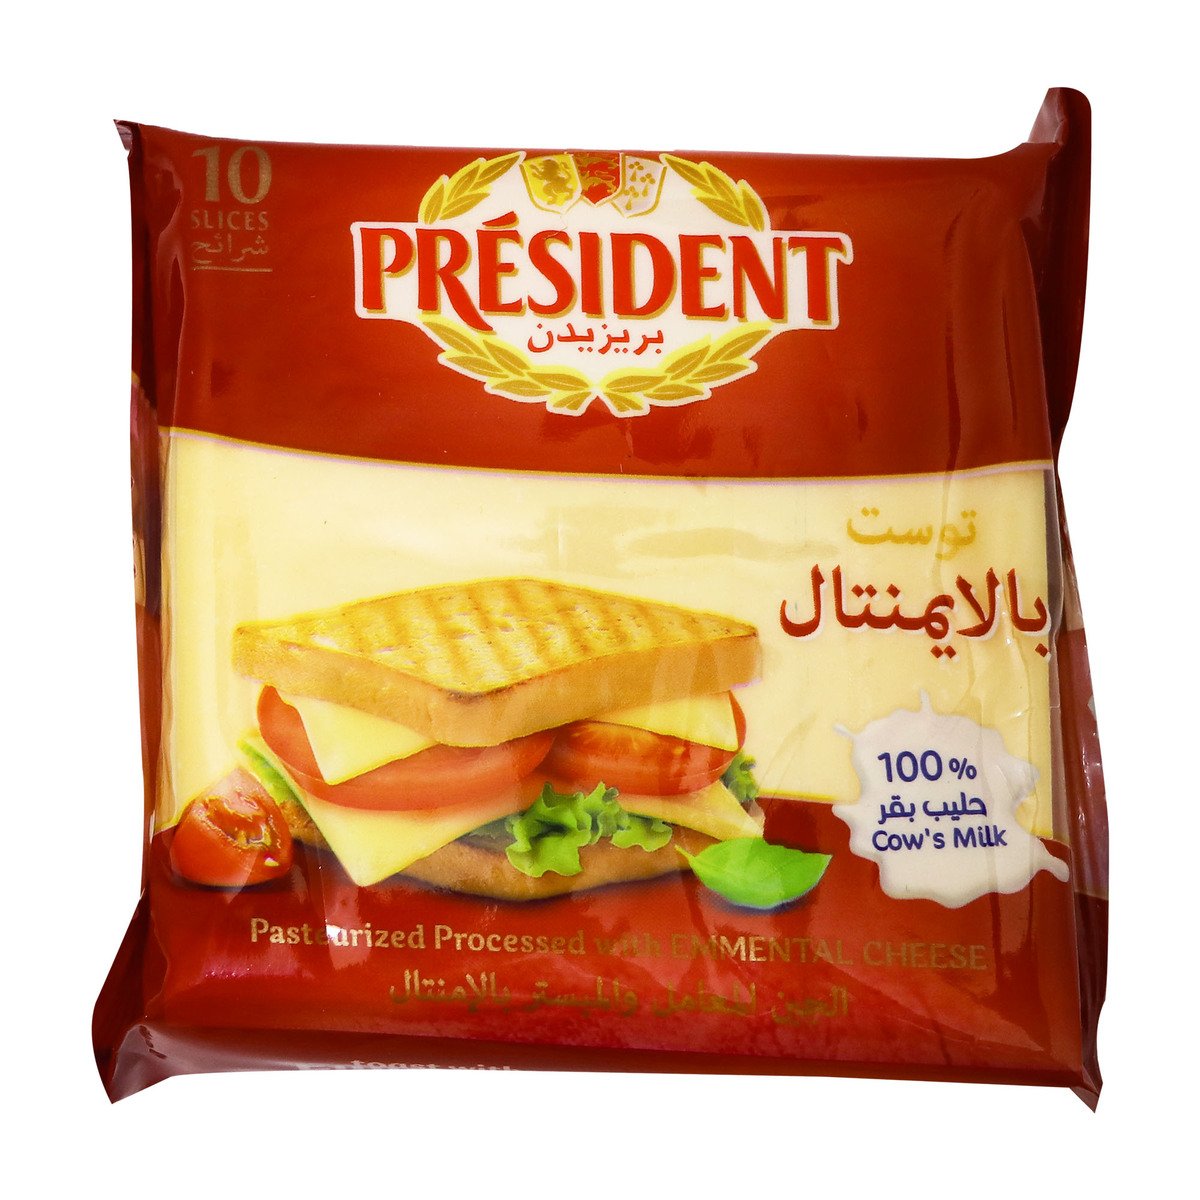 اشتري قم بشراء بريزيدن جبنة امينتال 200 جم Online at Best Price من الموقع - من لولو هايبر ماركت Sliced Cheese في السعودية